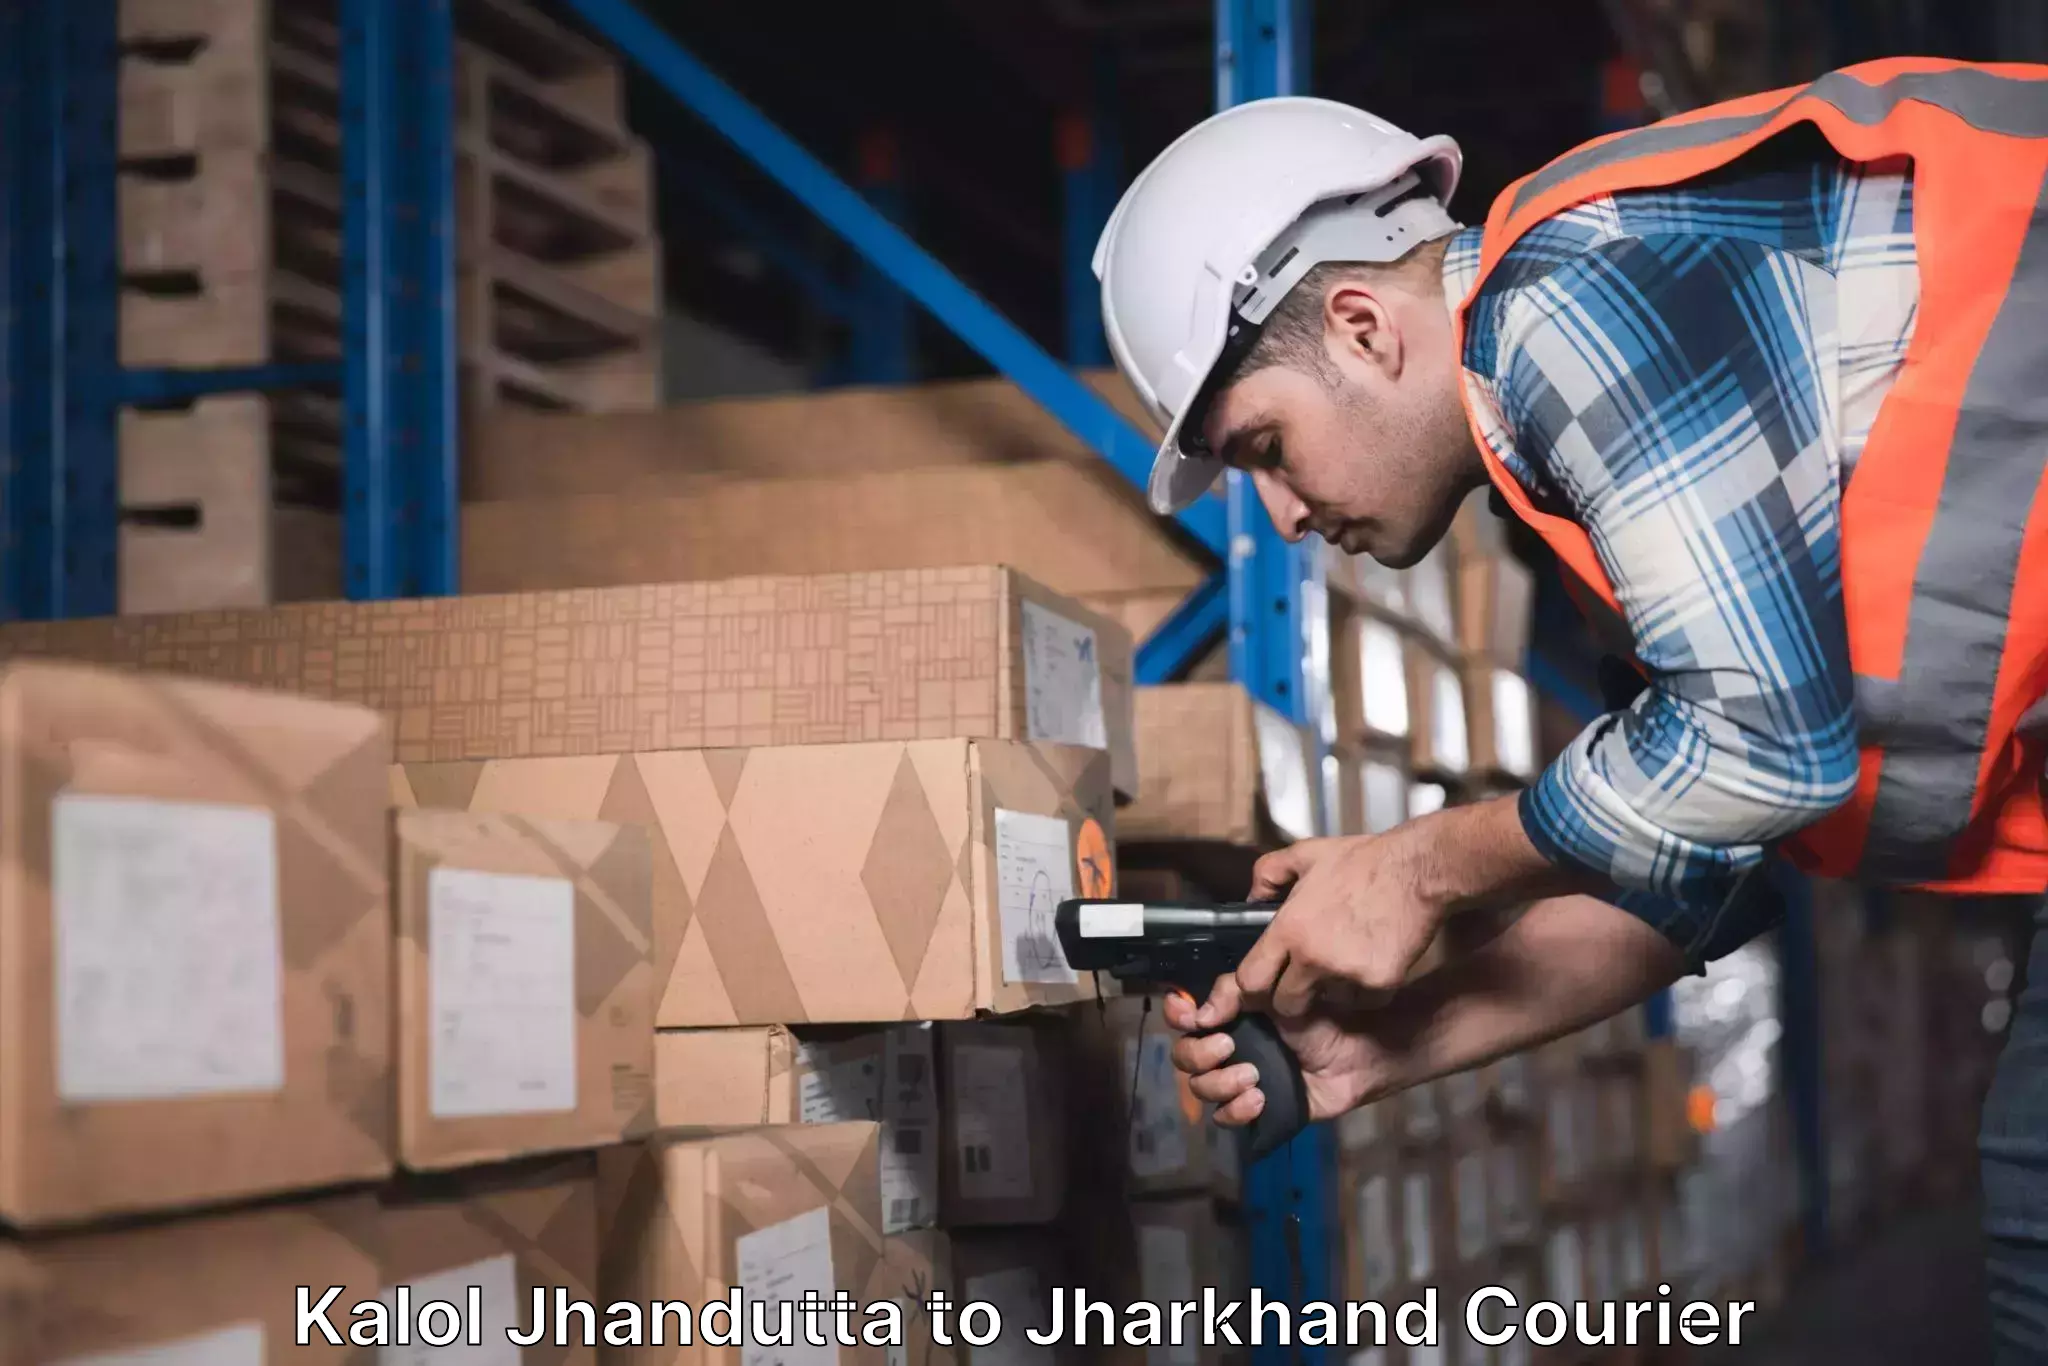 24-hour courier services Kalol Jhandutta to Jharkhand